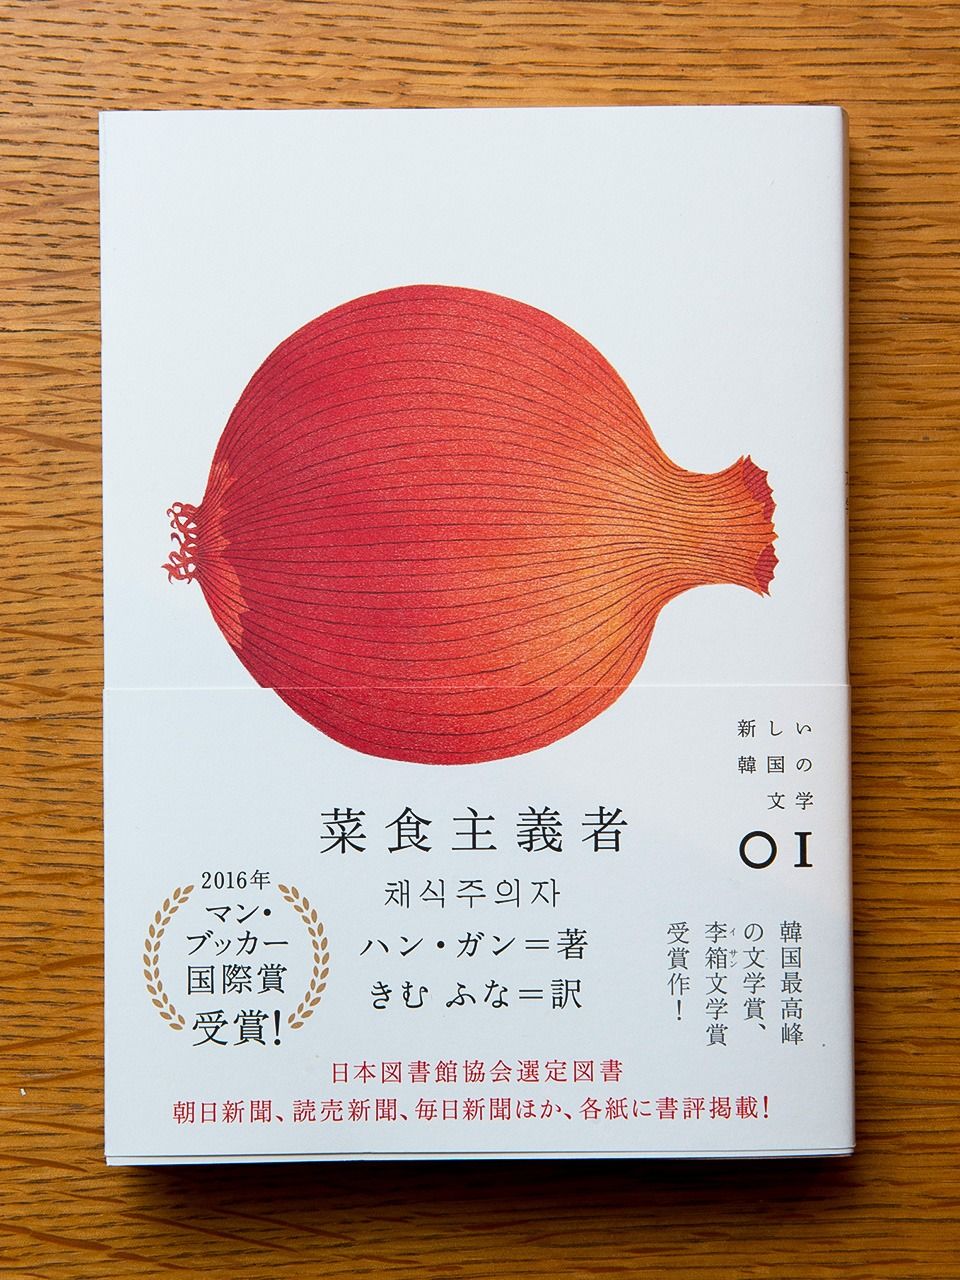 تصميم أنيق لغلاف النسخة اليابانية من رواية Han Kang (The Vegetarian) بواسطة يوريفوجي بونبي وسوزوكي تشيكاكو. ساعد التصميم البسيط والحديث لغلاف الرواية على زيادة شعبيتها لدى مجموعة واسعة من القراء على اختلاف أعمارهم.